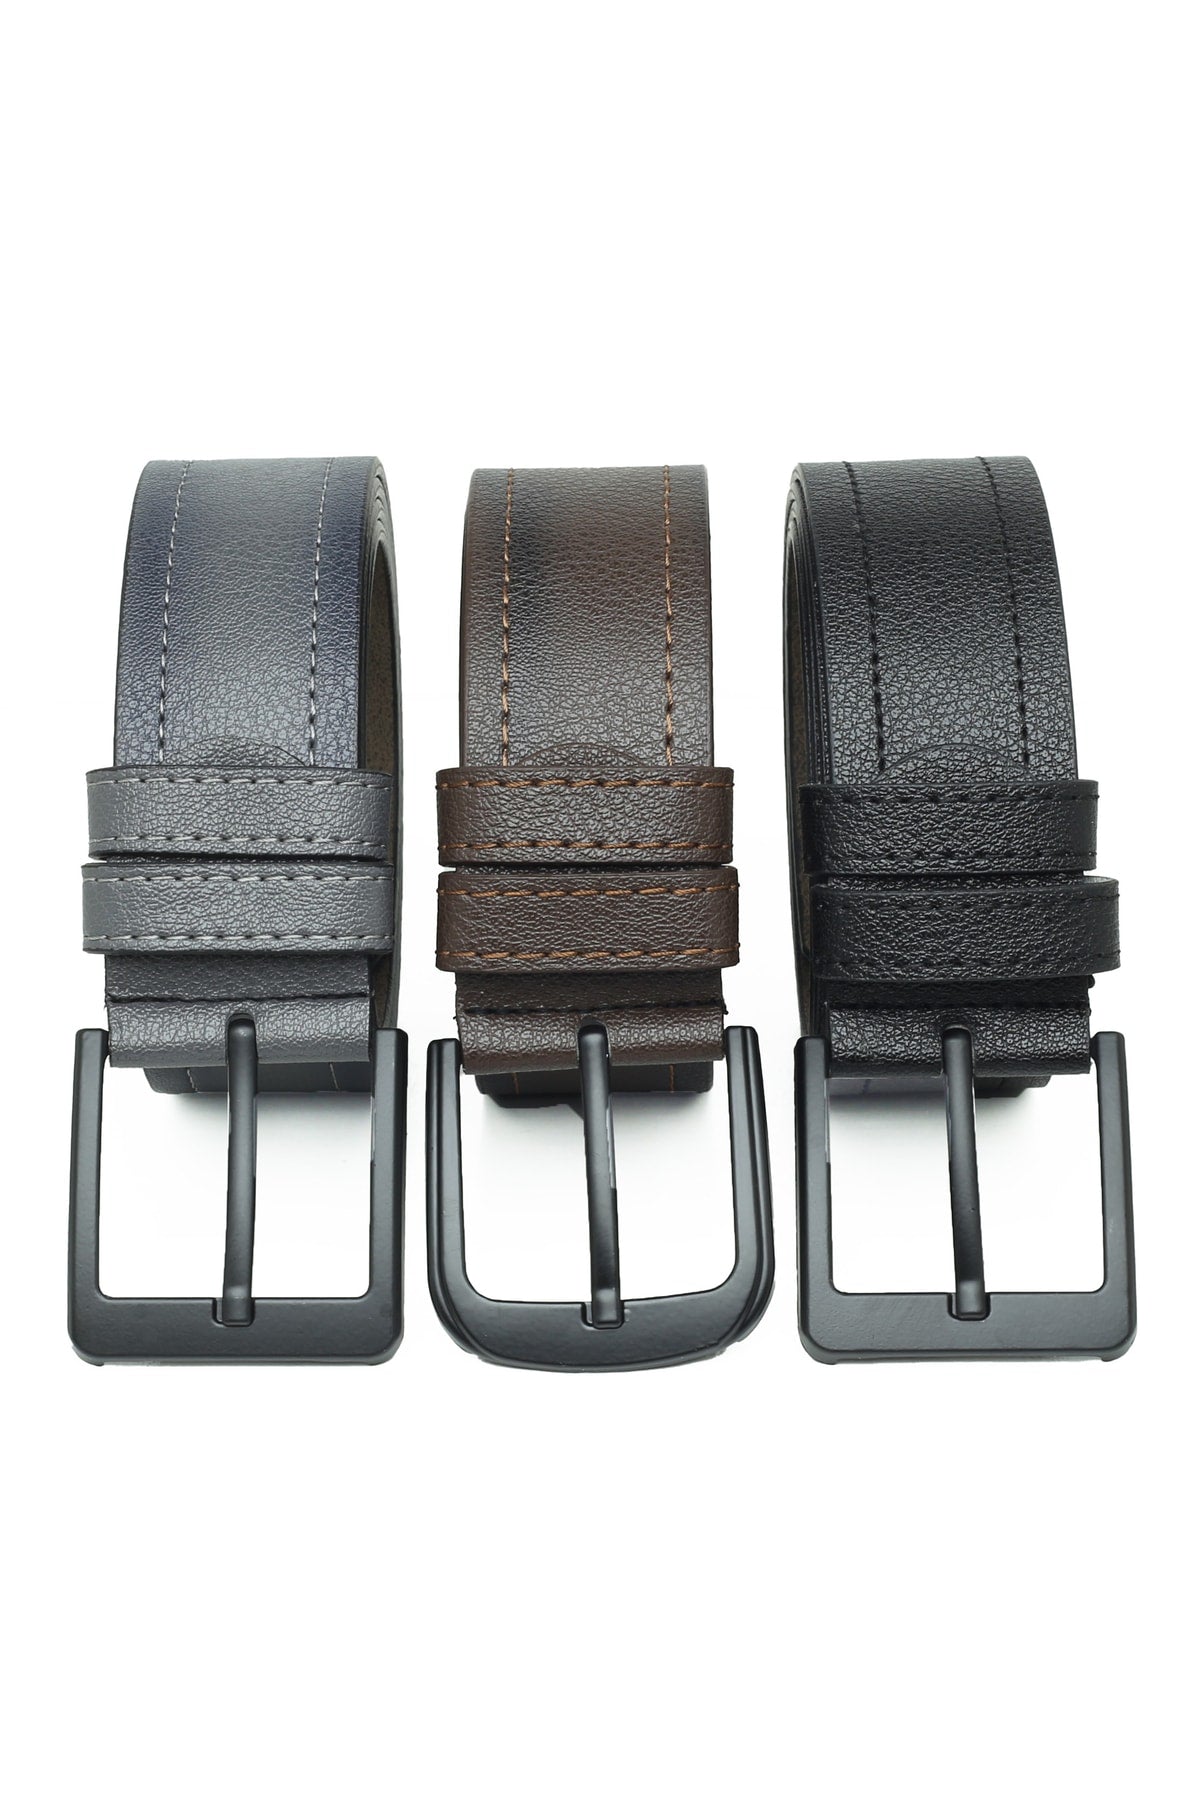 3 Pieces Men's Belts Suitable For Jeans Or Canvas.